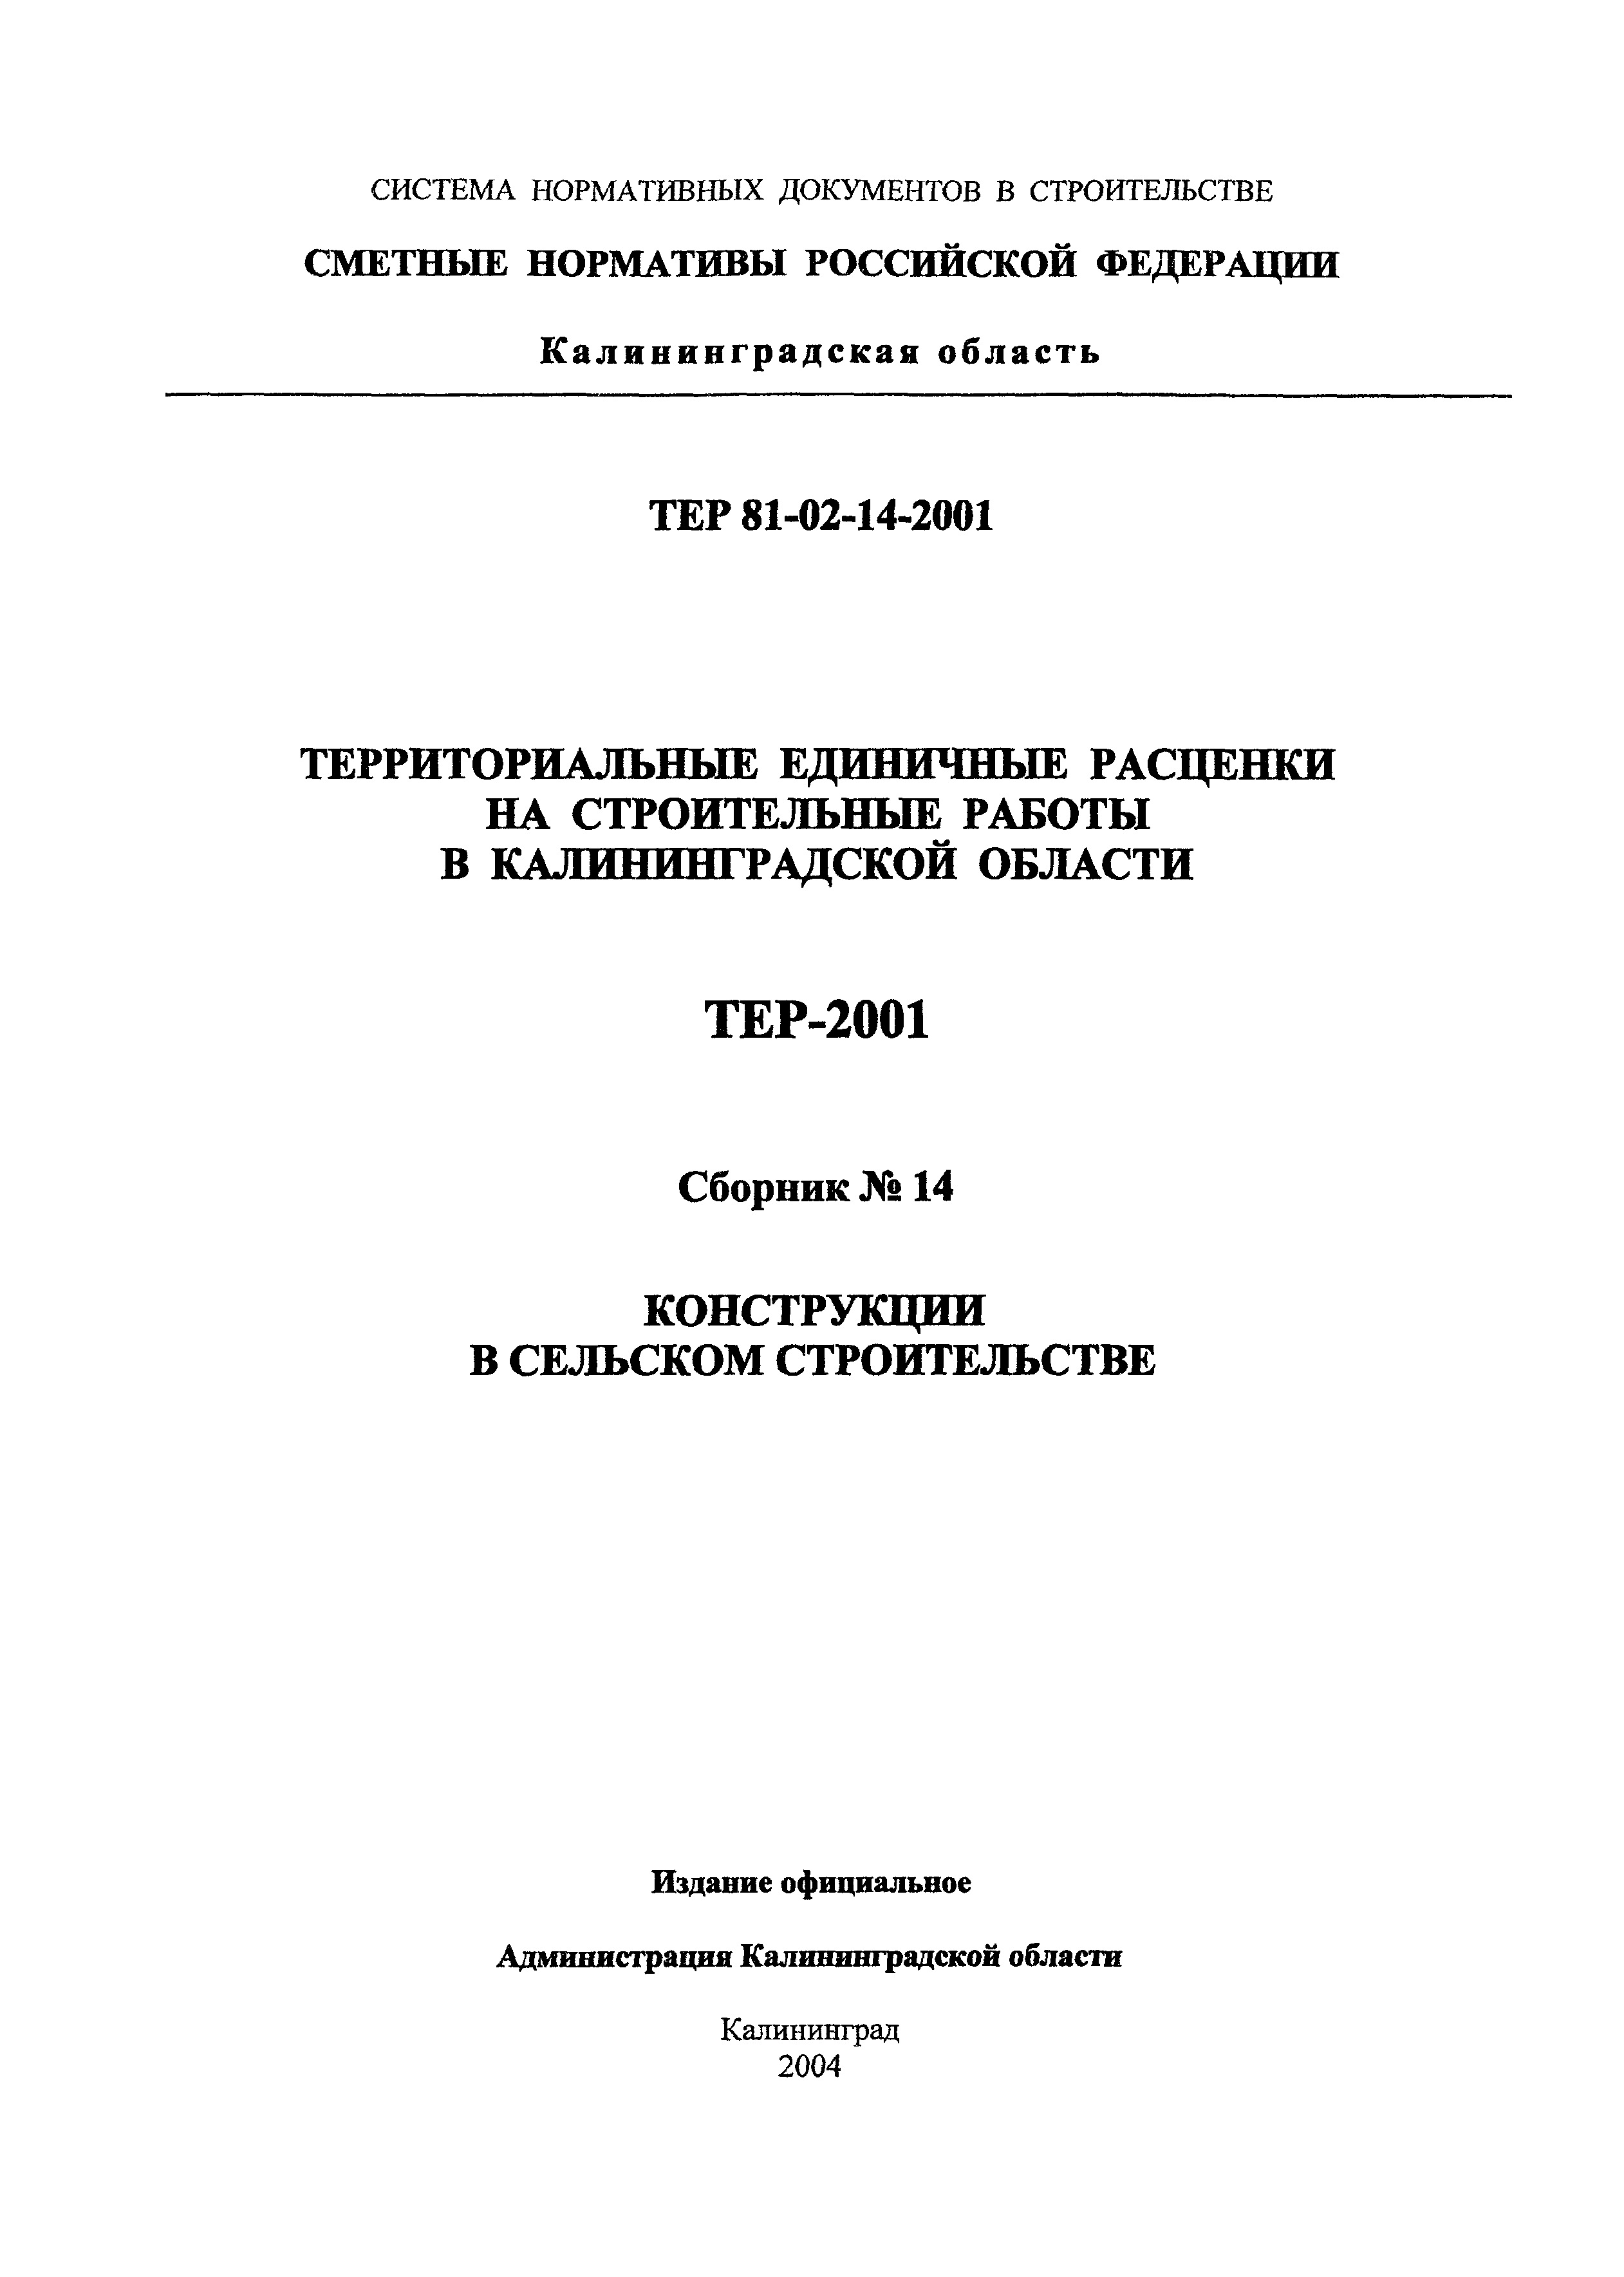 ТЕР Калининградской области 2001-14